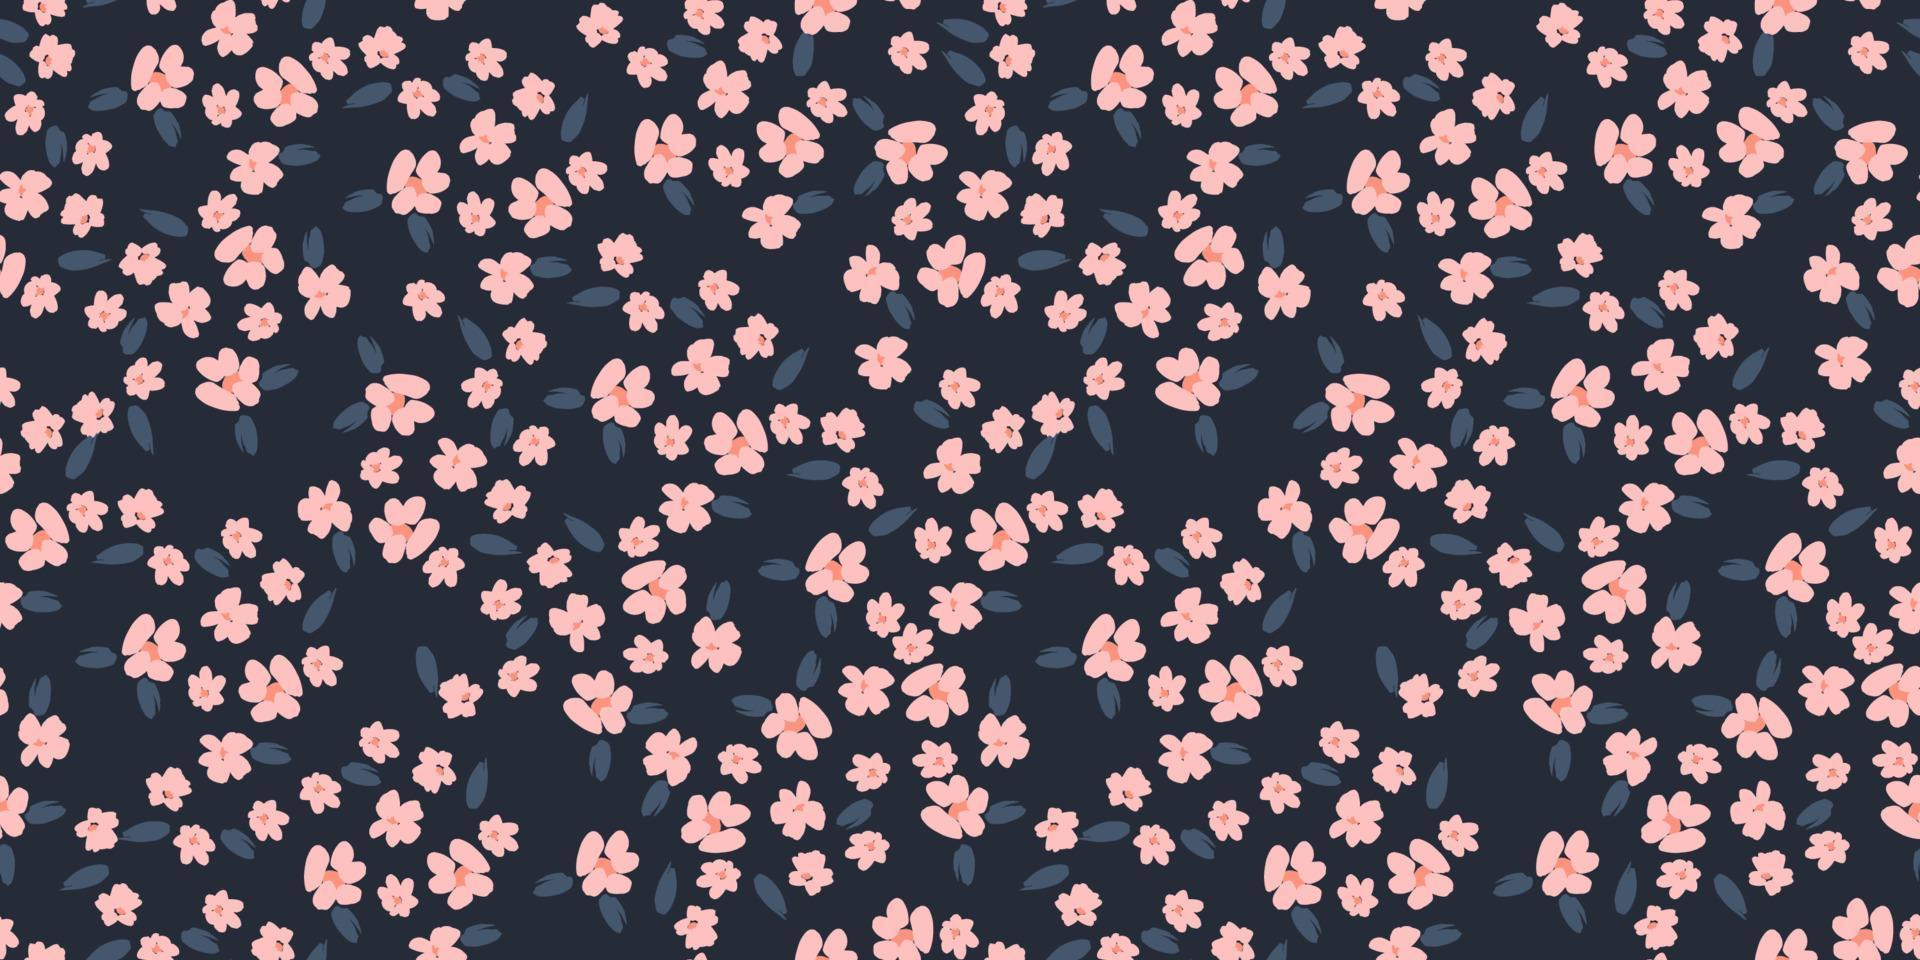 motif floral sans soudure. conception de vecteur pour le papier, la couverture, le tissu, la décoration intérieure et toute autre utilisation